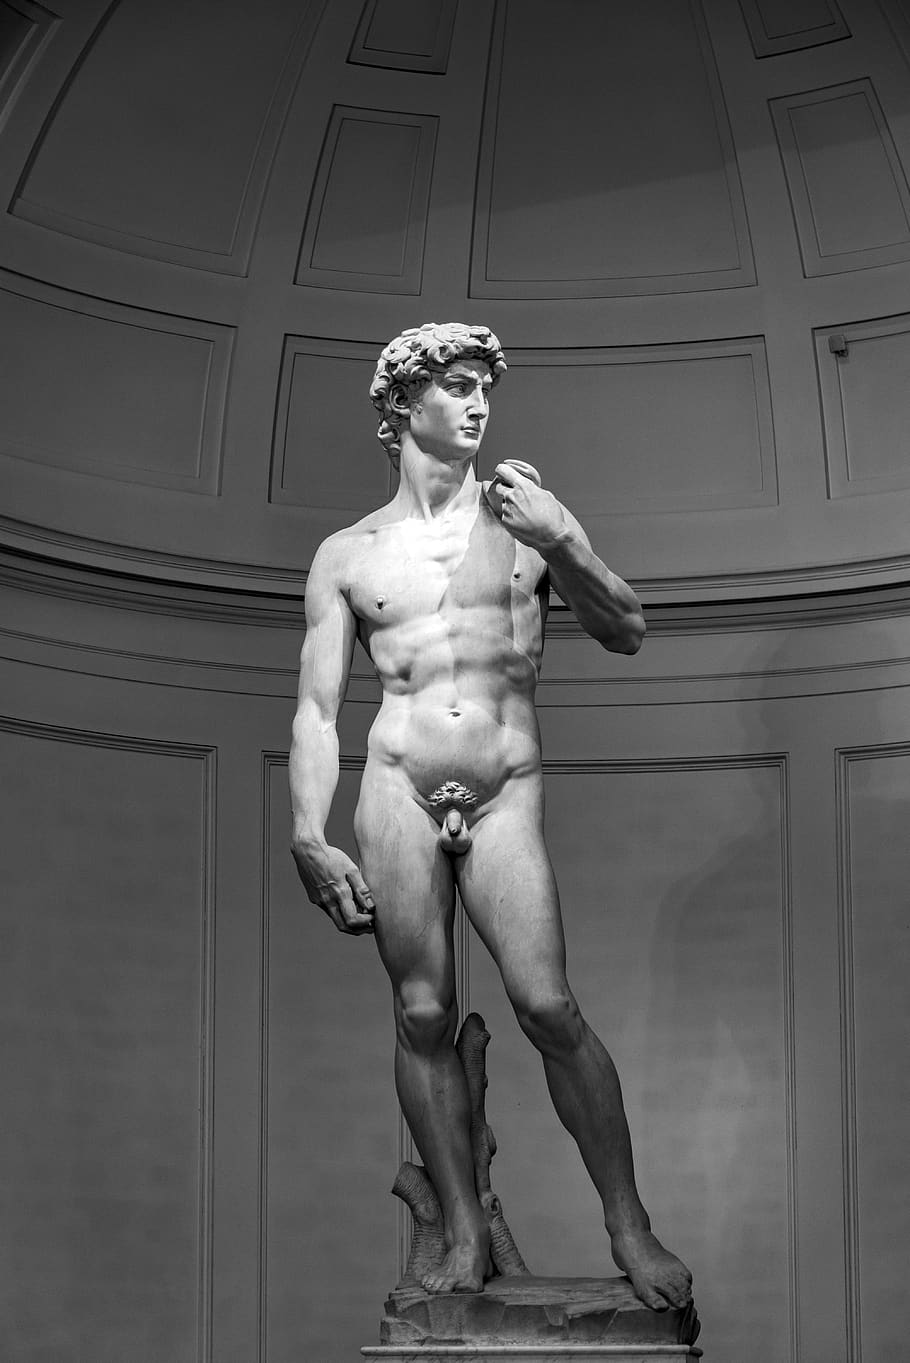 david, michelangelo, florence, italia, patung, museum, representasi, keserupaan pria, representasi manusia, seni dan kerajinan